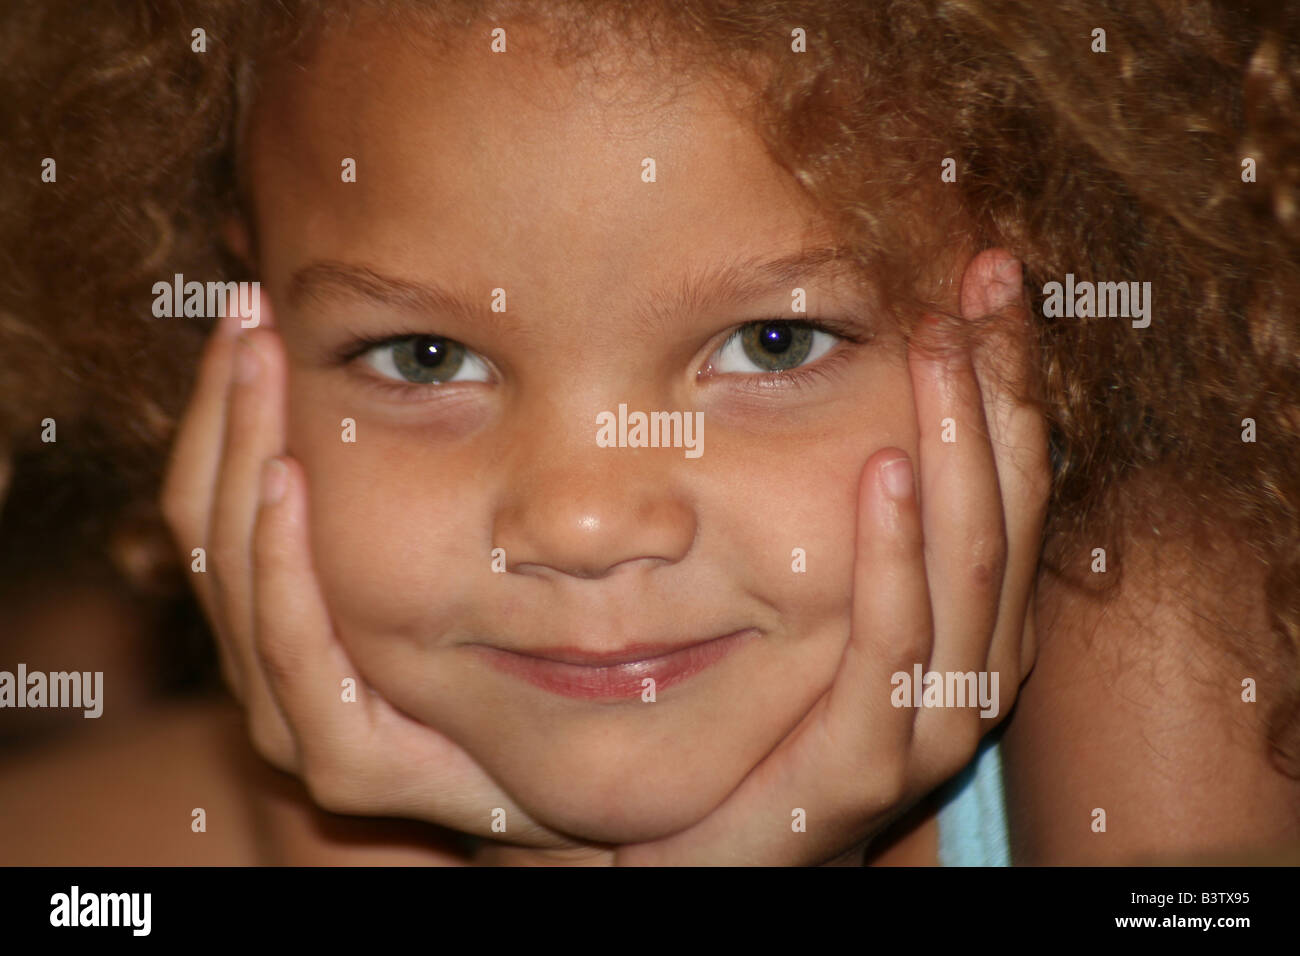 Young Mixed Race Girl Aux Yeux Verts Souriant De Face En Forme De Mains Photo Stock Alamy